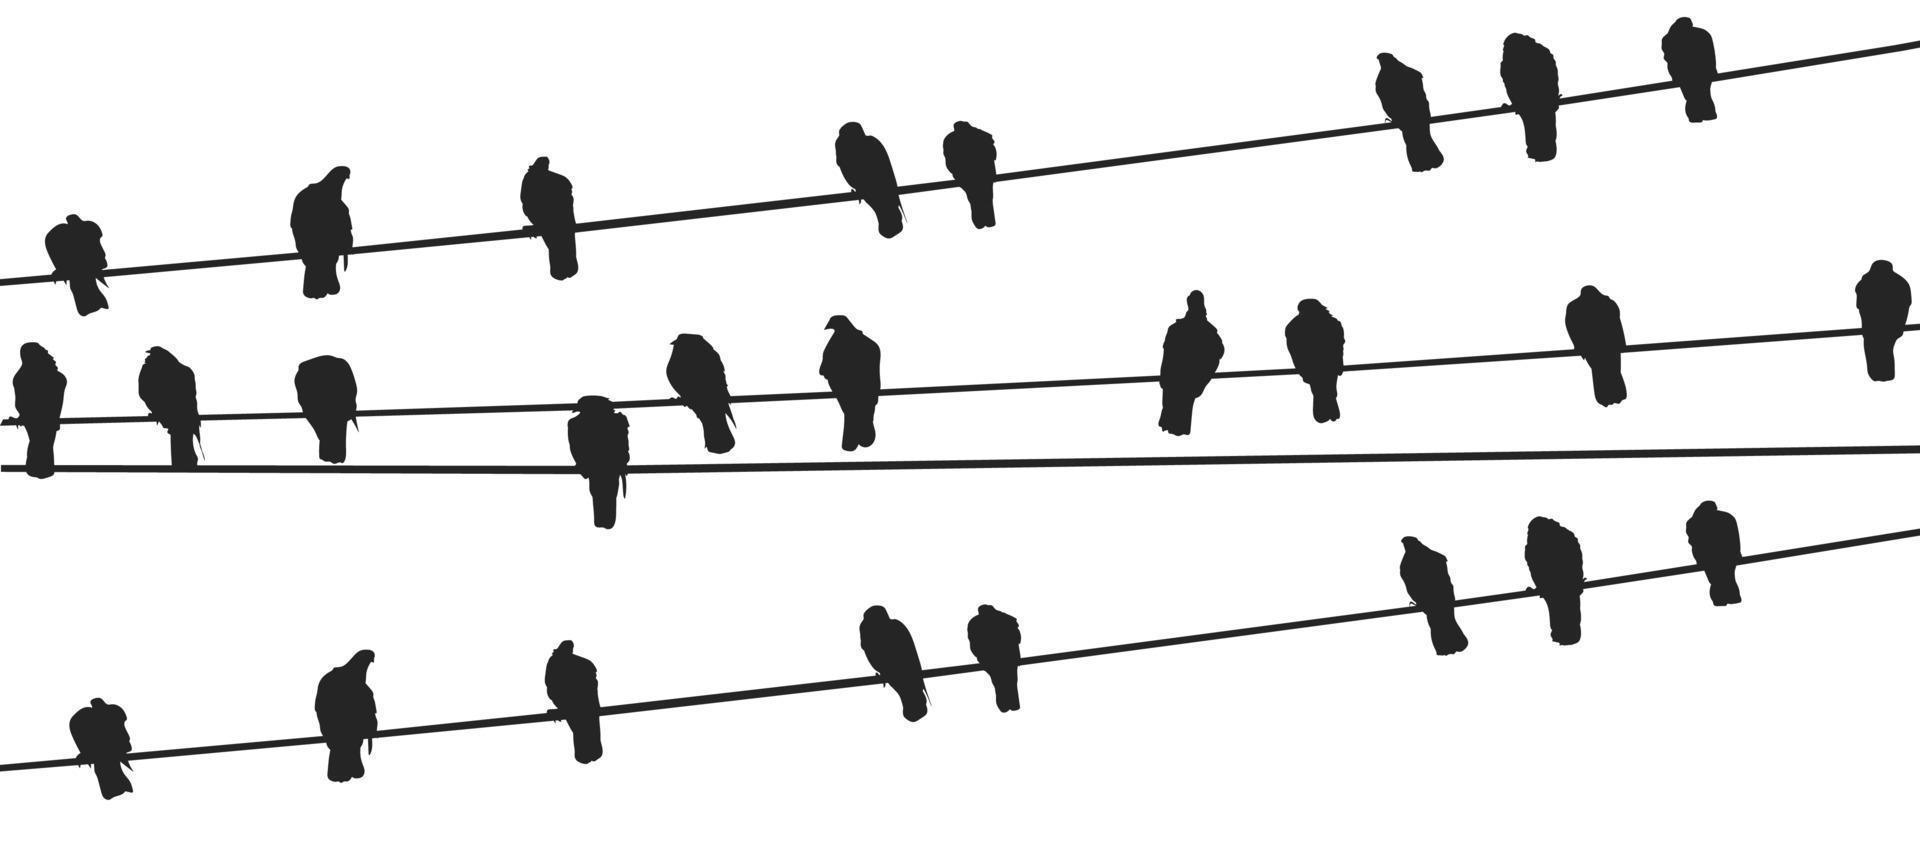 pájaros en un vector libre de alambre vector gratis